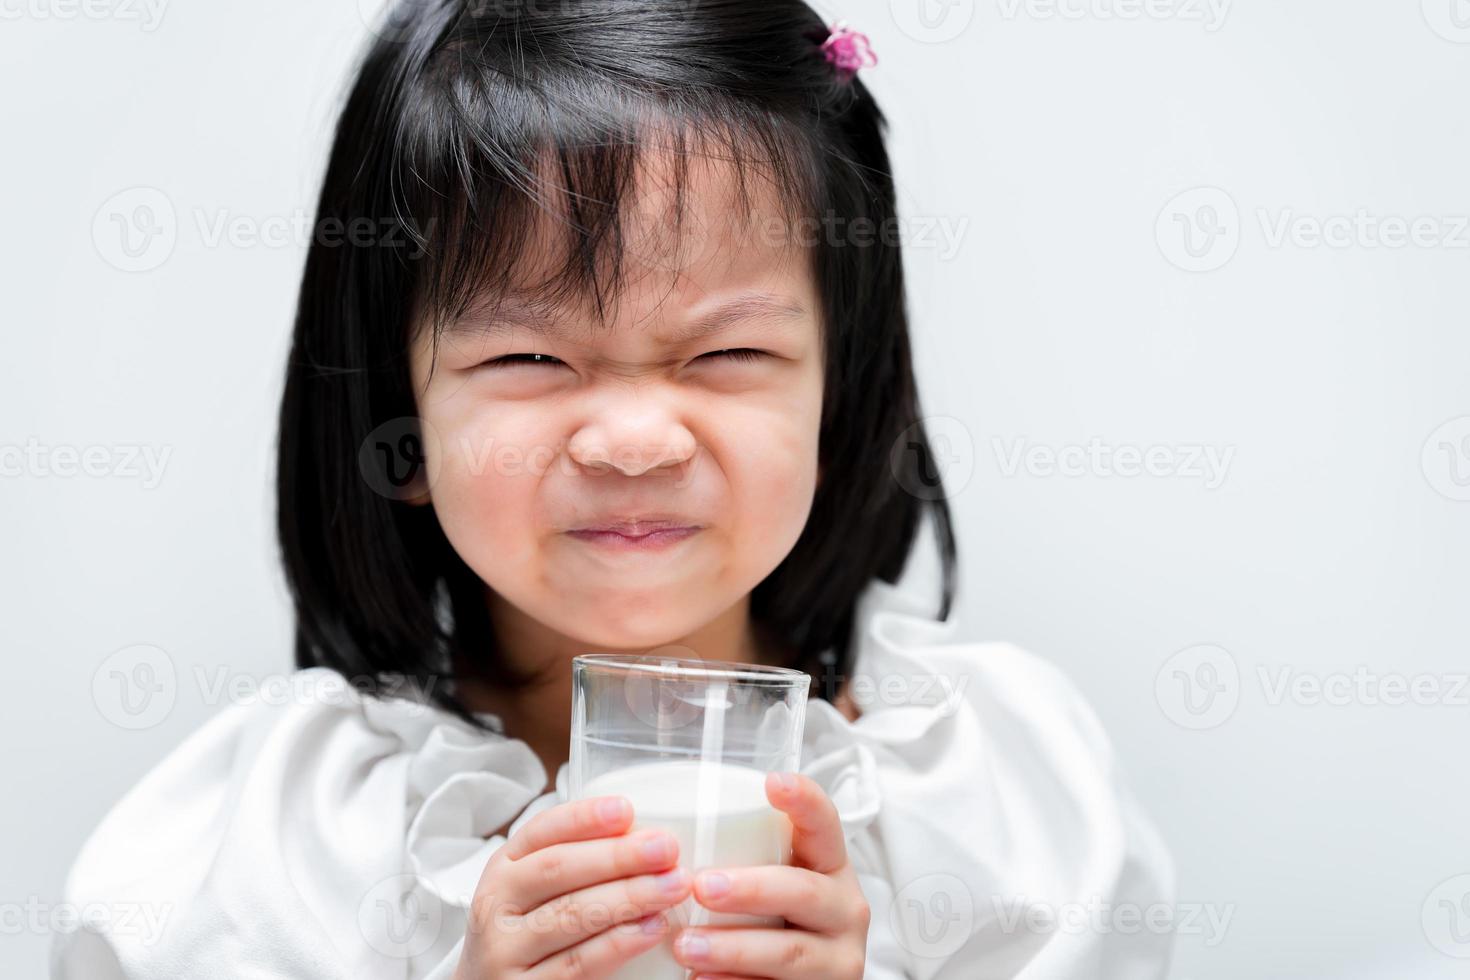 jolie fille boit du lait en verre. les enfants aiment boire du lait. enfant de 4 ans. fond blanc isolé. photo